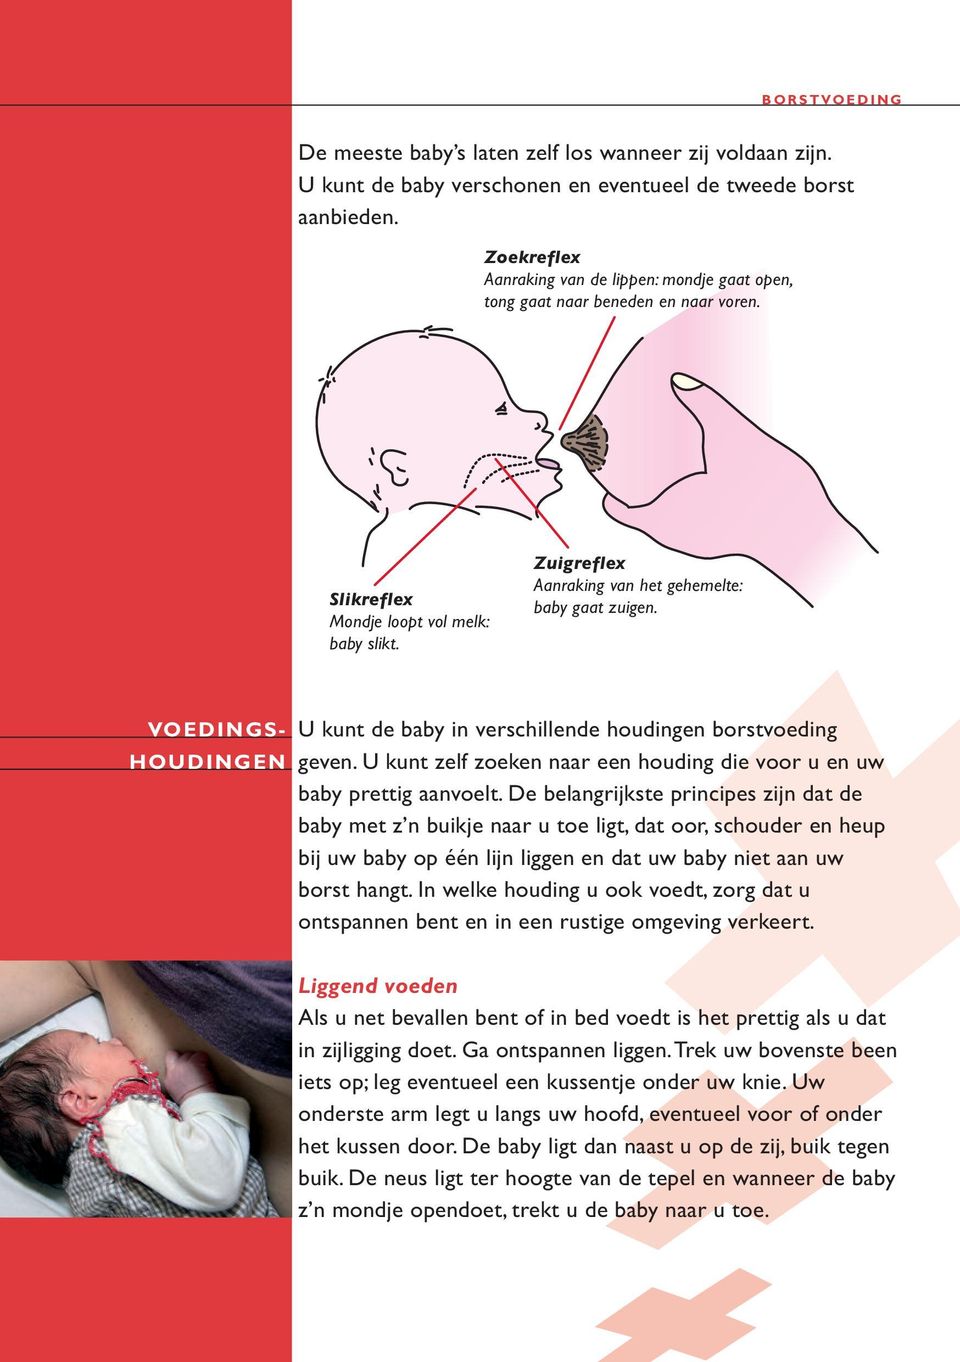 VOEDINGS- HOUDINGEN U kunt de baby in verschillende houdingen borstvoeding geven. U kunt zelf zoeken naar een houding die voor u en uw baby prettig aanvoelt.